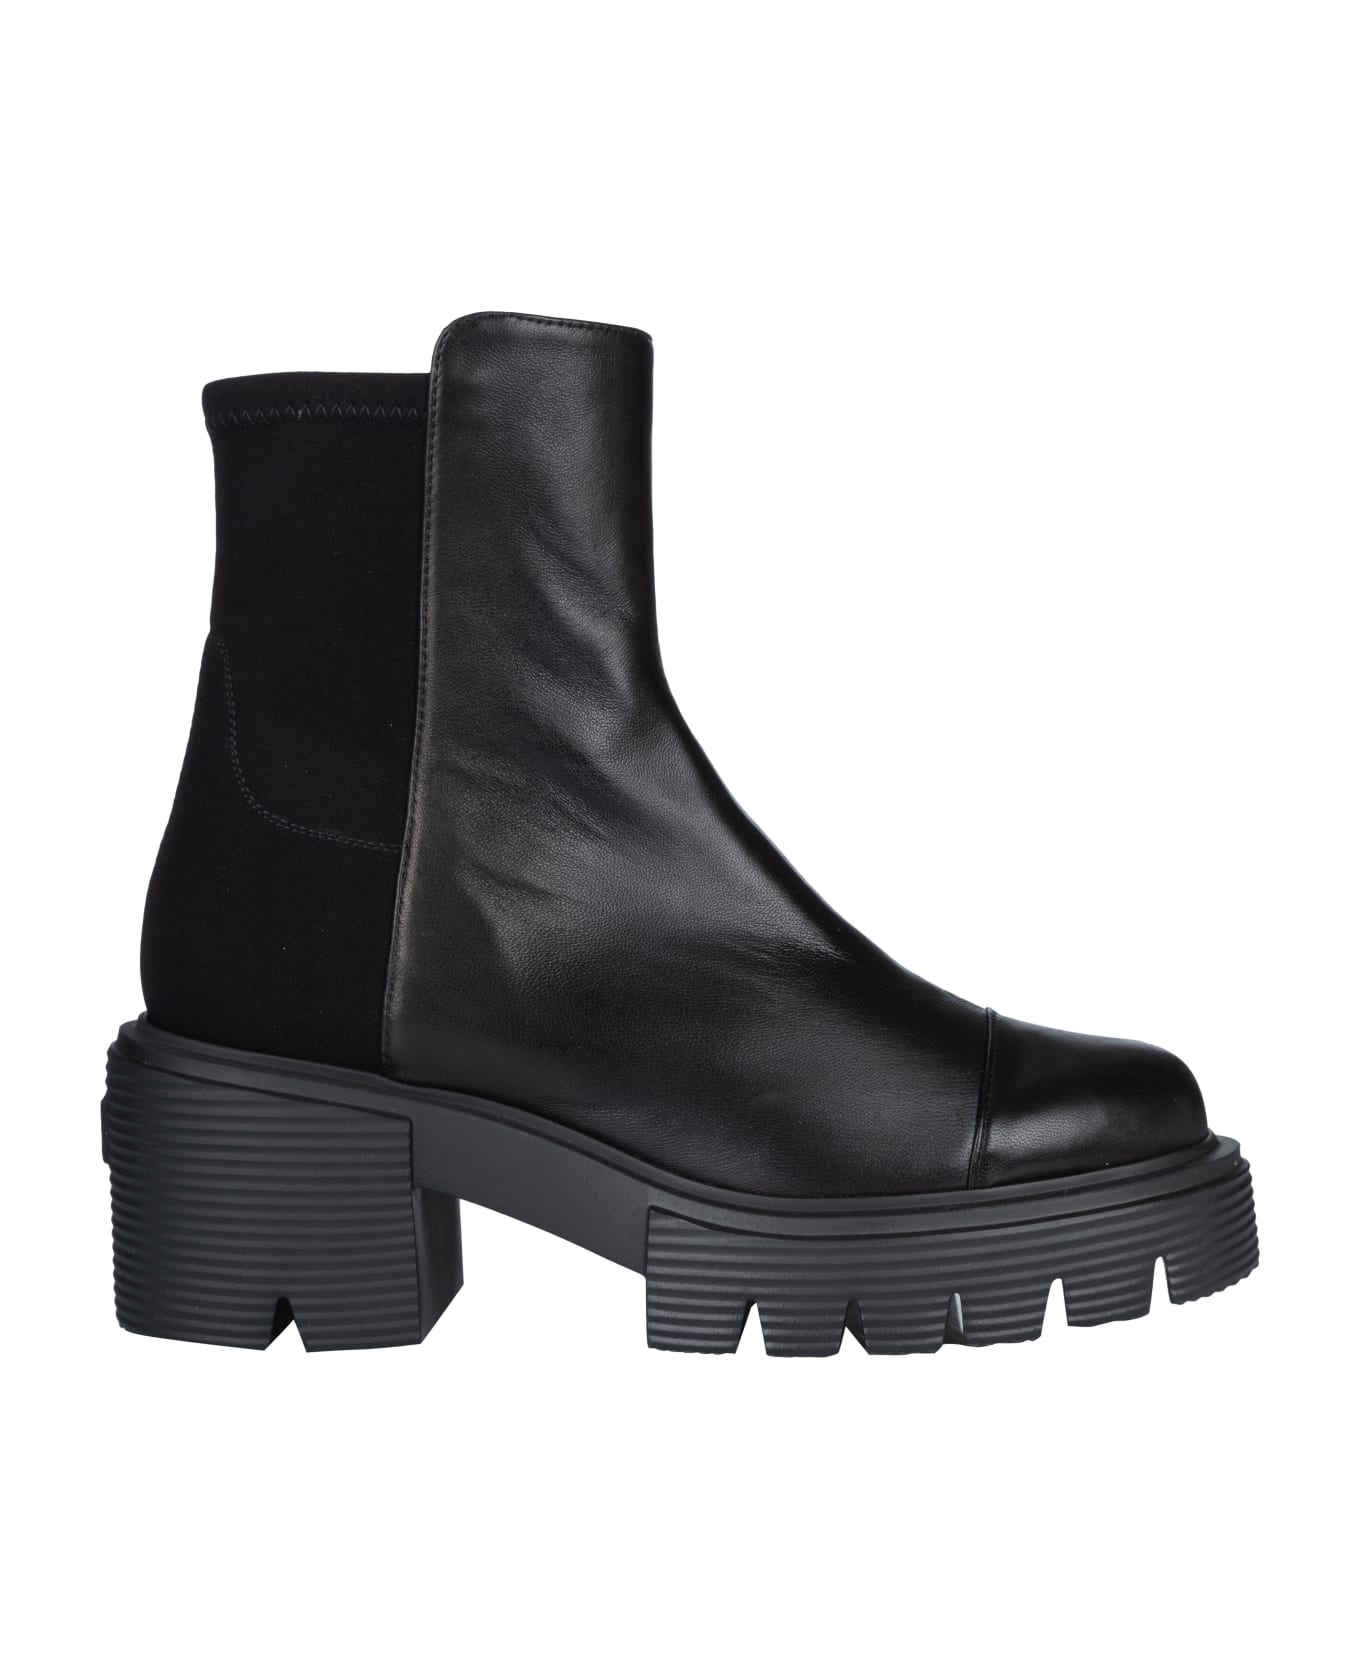 Stuart Weitzman 5050 Soho Boots - Black